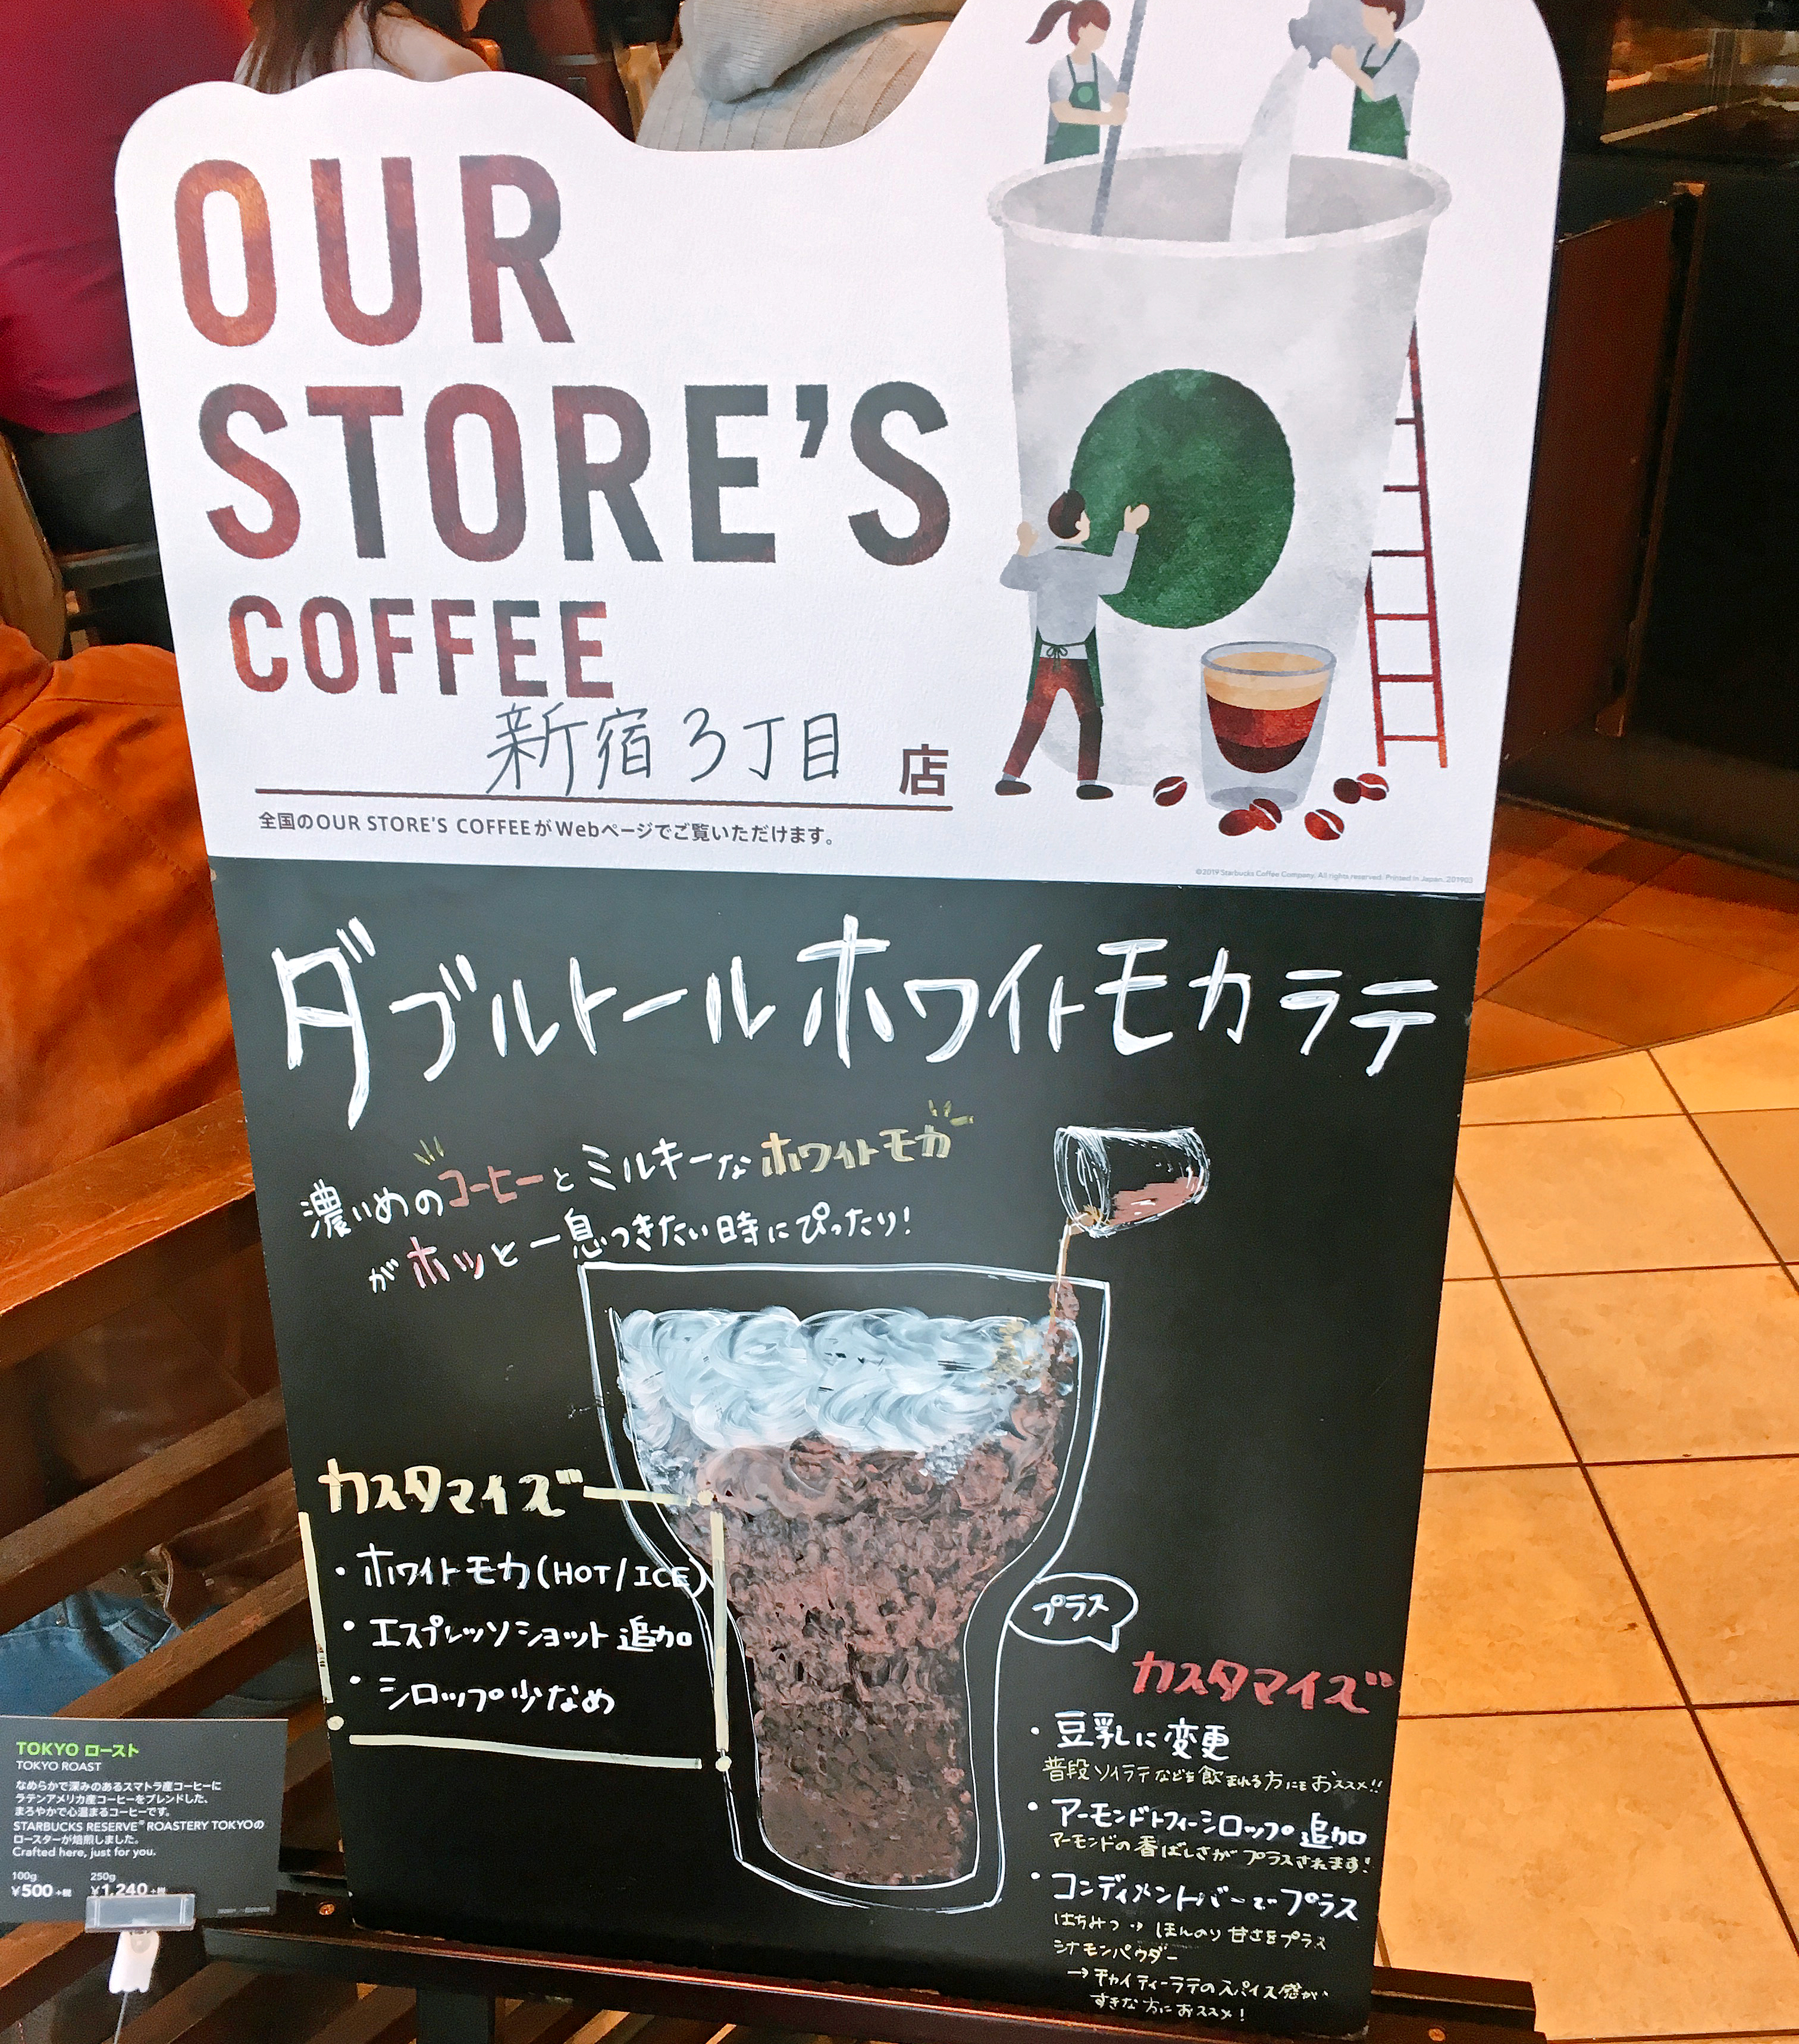 保存版 東京のスターバックス全329店舗のオリジナルメニューまとめ 都内の Our Store S Coffee を完全網羅 ロケットニュース24